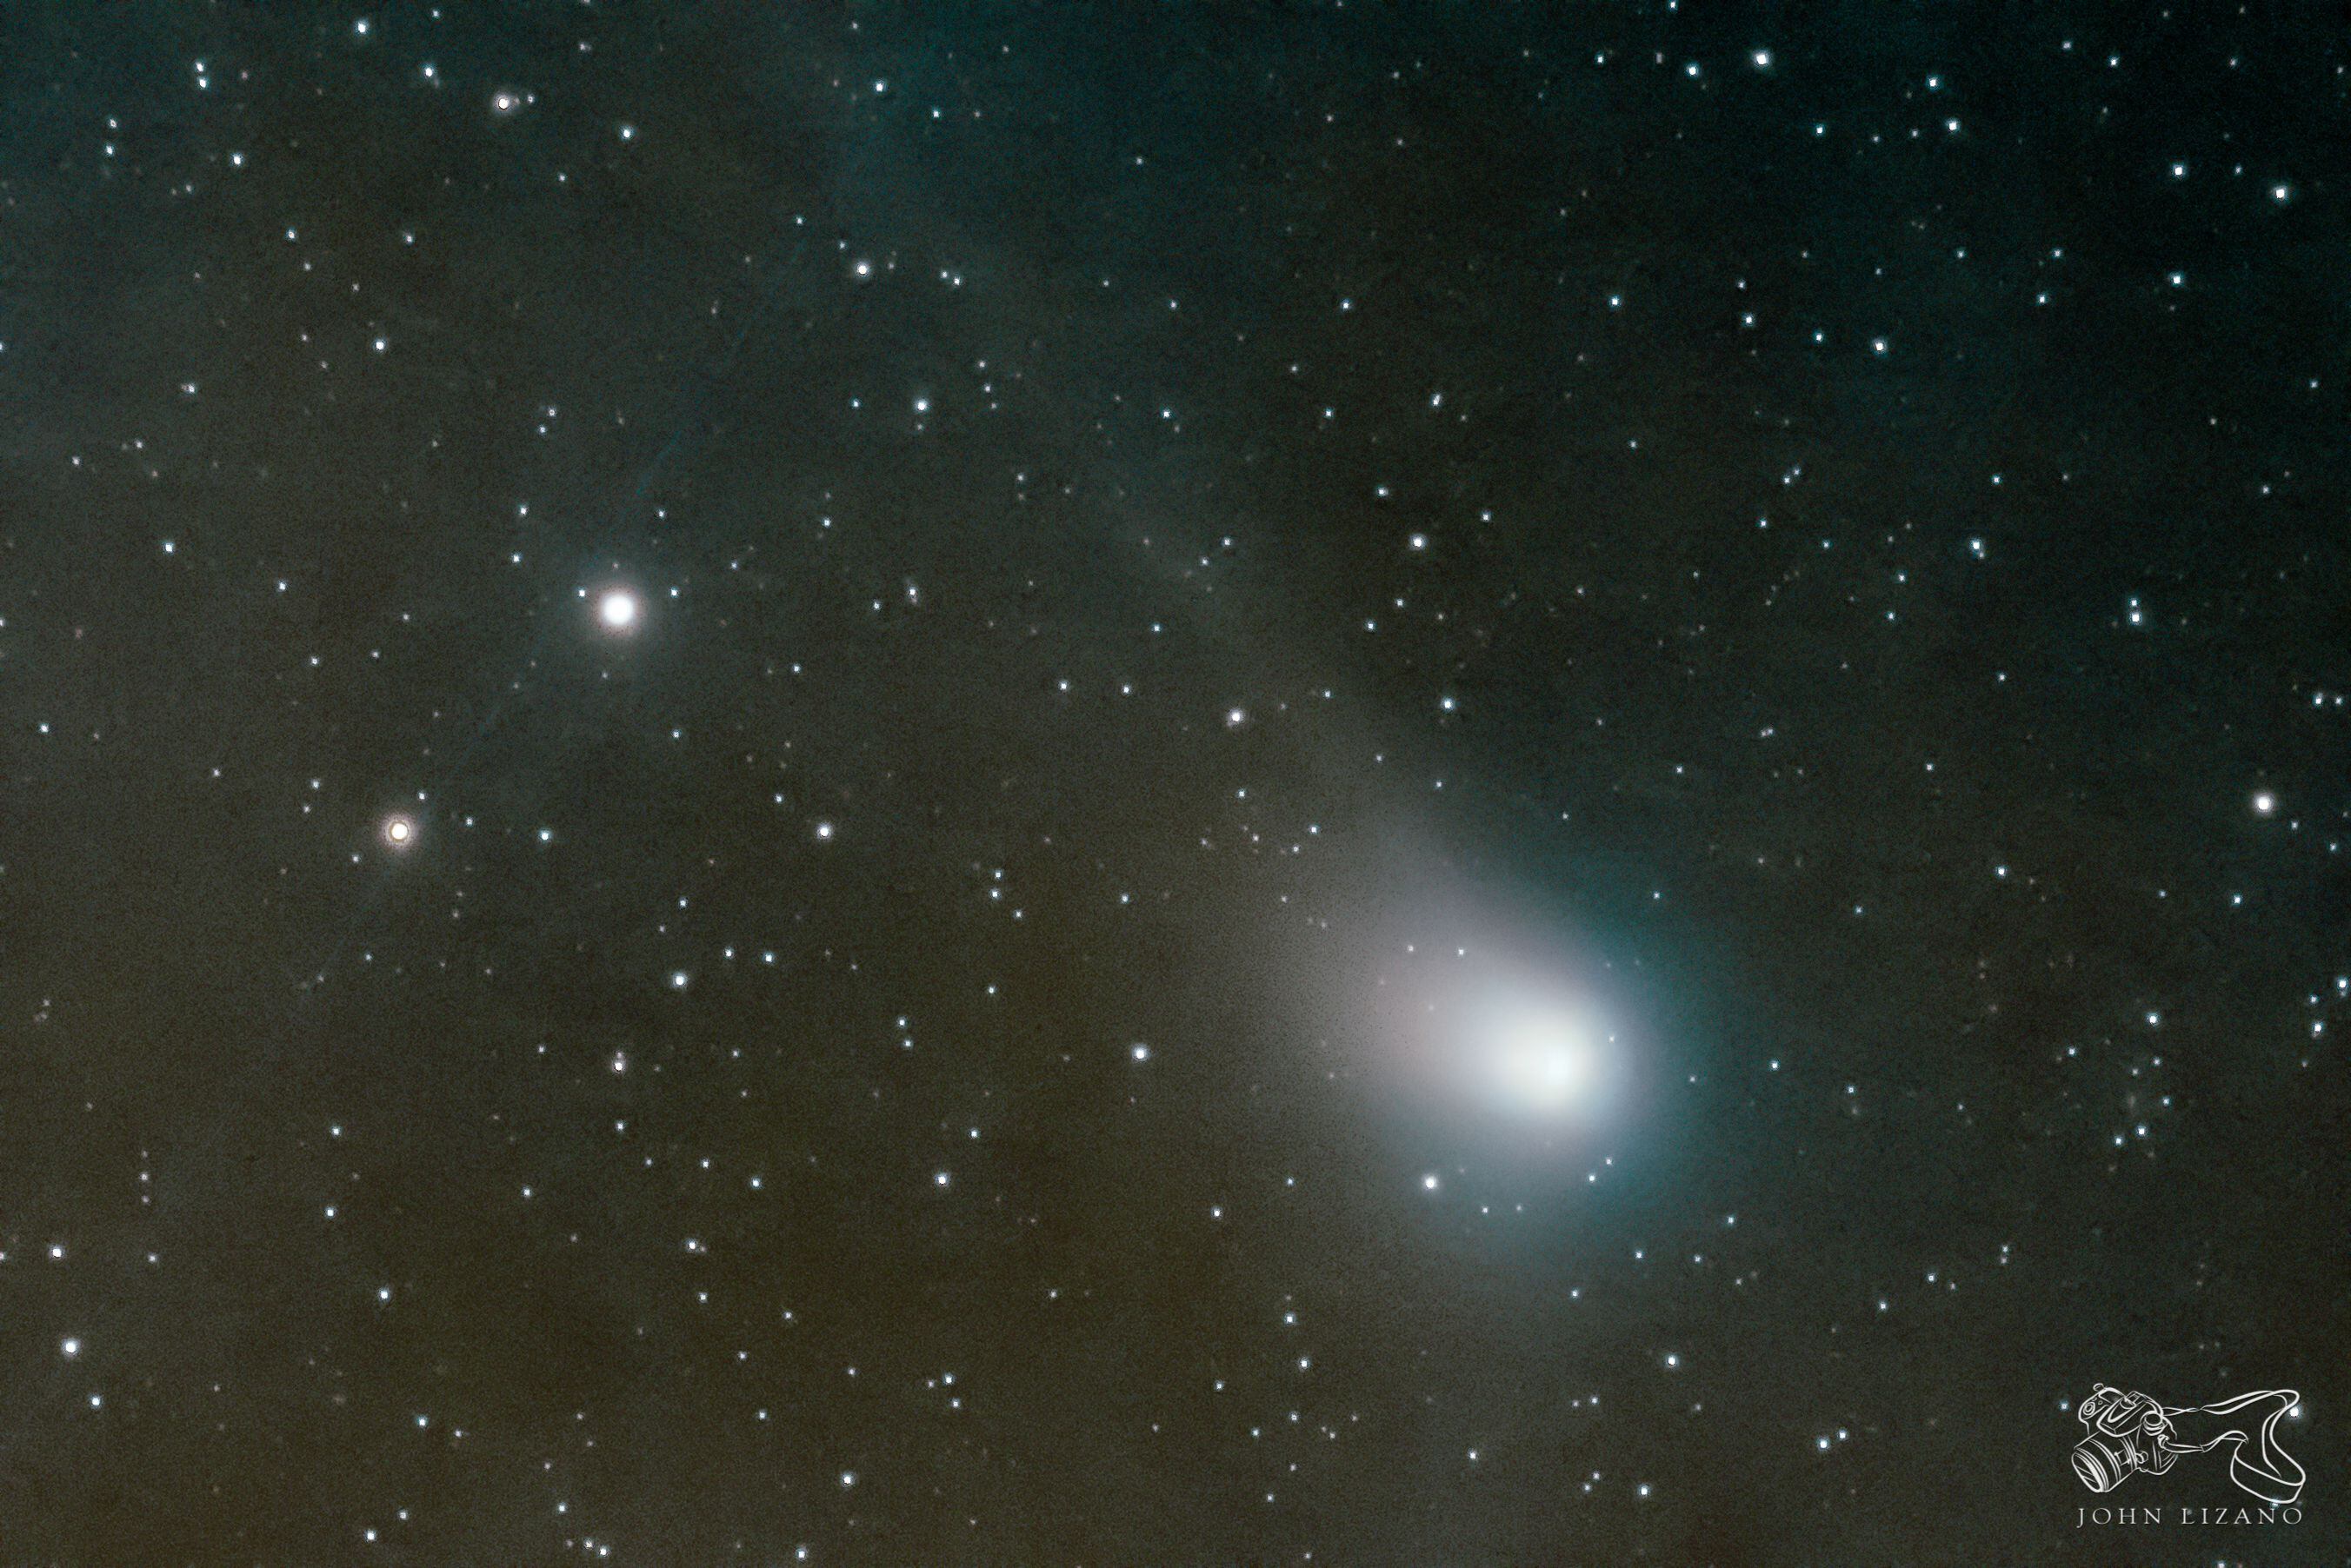 El cometa fue fotografiado este miércoles 18 de enero desde el centro de Grecia, utilizando una exposición fotográfica de 60 segundos. Fotografía: Cortesía John Lizano Umaña.